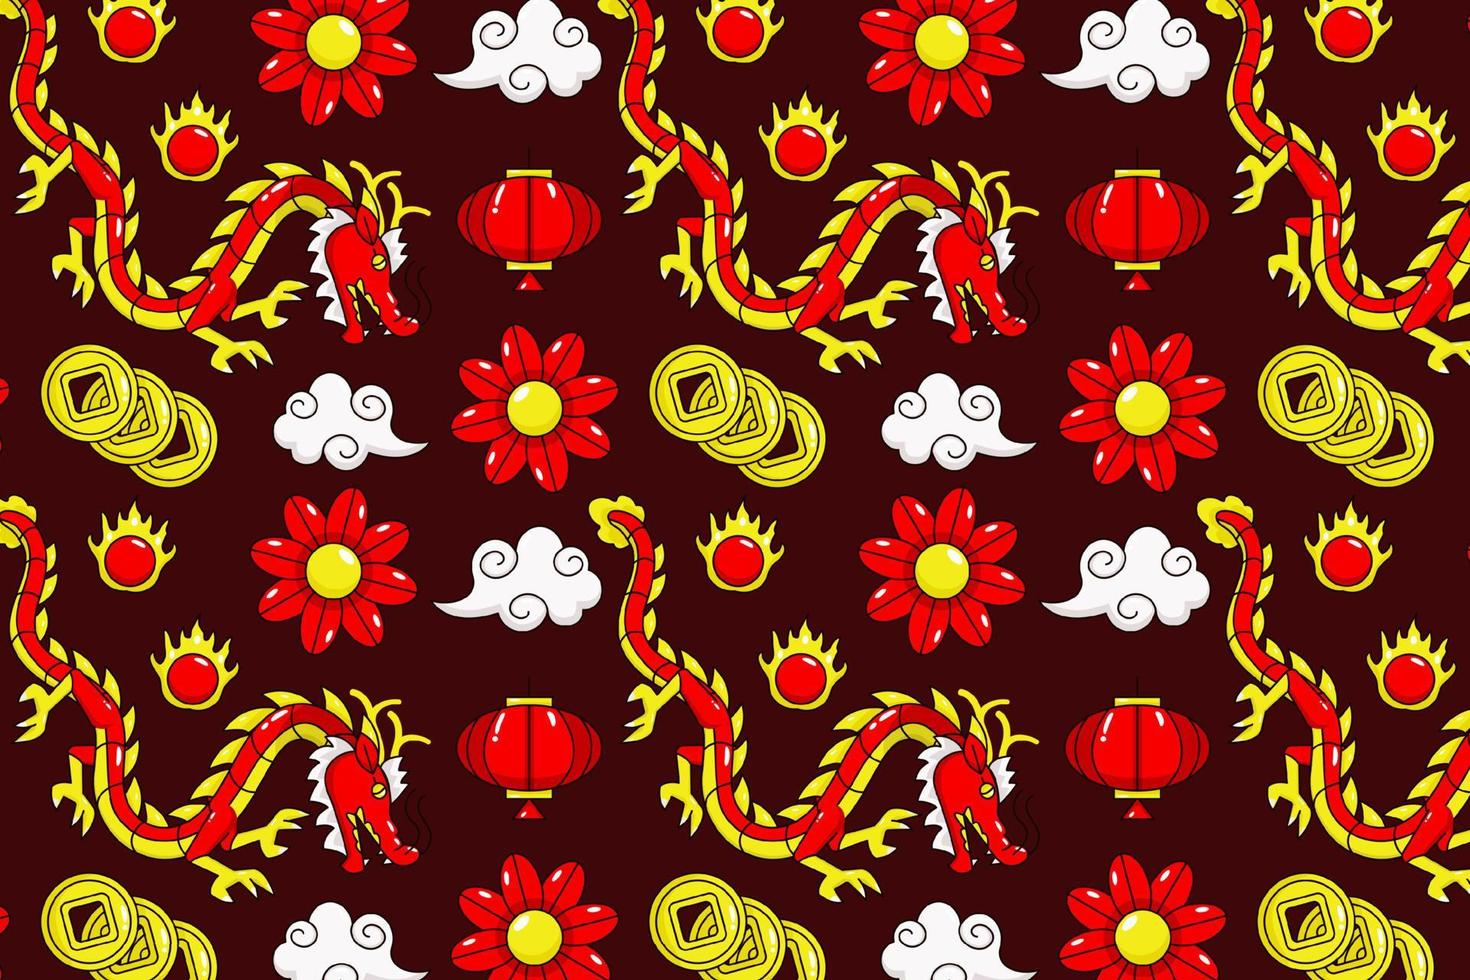 Symbolmuster des chinesischen Neujahrsfests. Drachen, Laternen, Gold, Koi-Fische und Feuerwerkskörper vektor